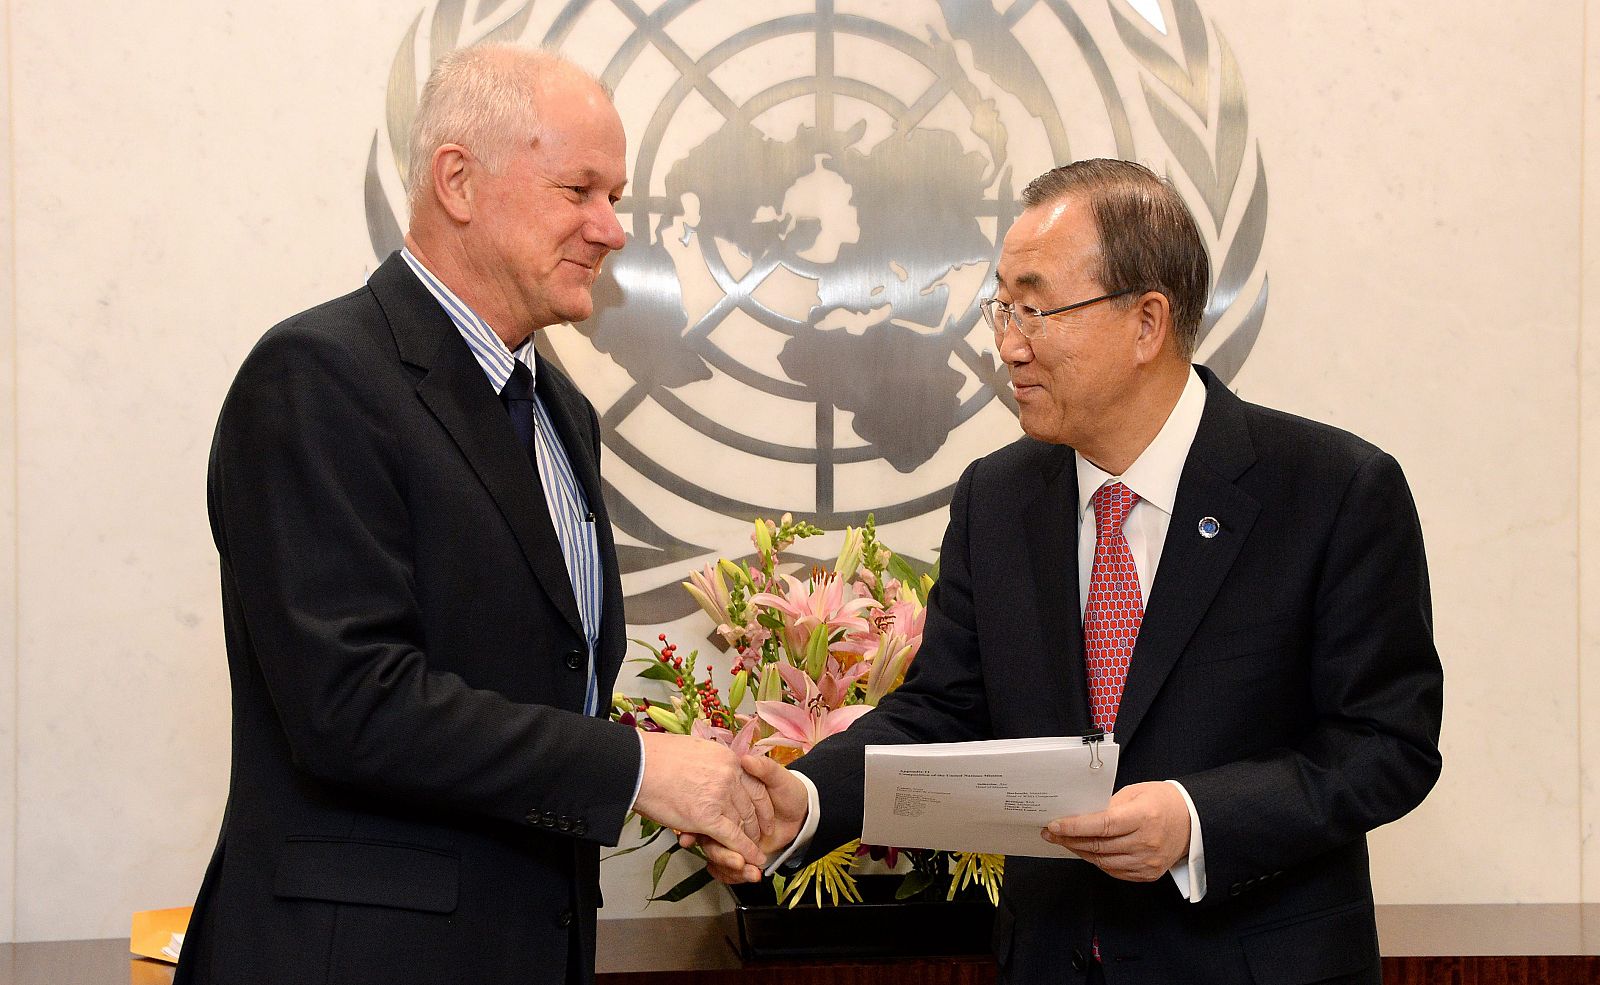 El responsable de la Misión de Investigación de la ONU sobre Armas Químicas en Siria, Ake Sellstrom, entrega el informe a el secretario general de las Naciones Unidas, Ban Ki-moon.